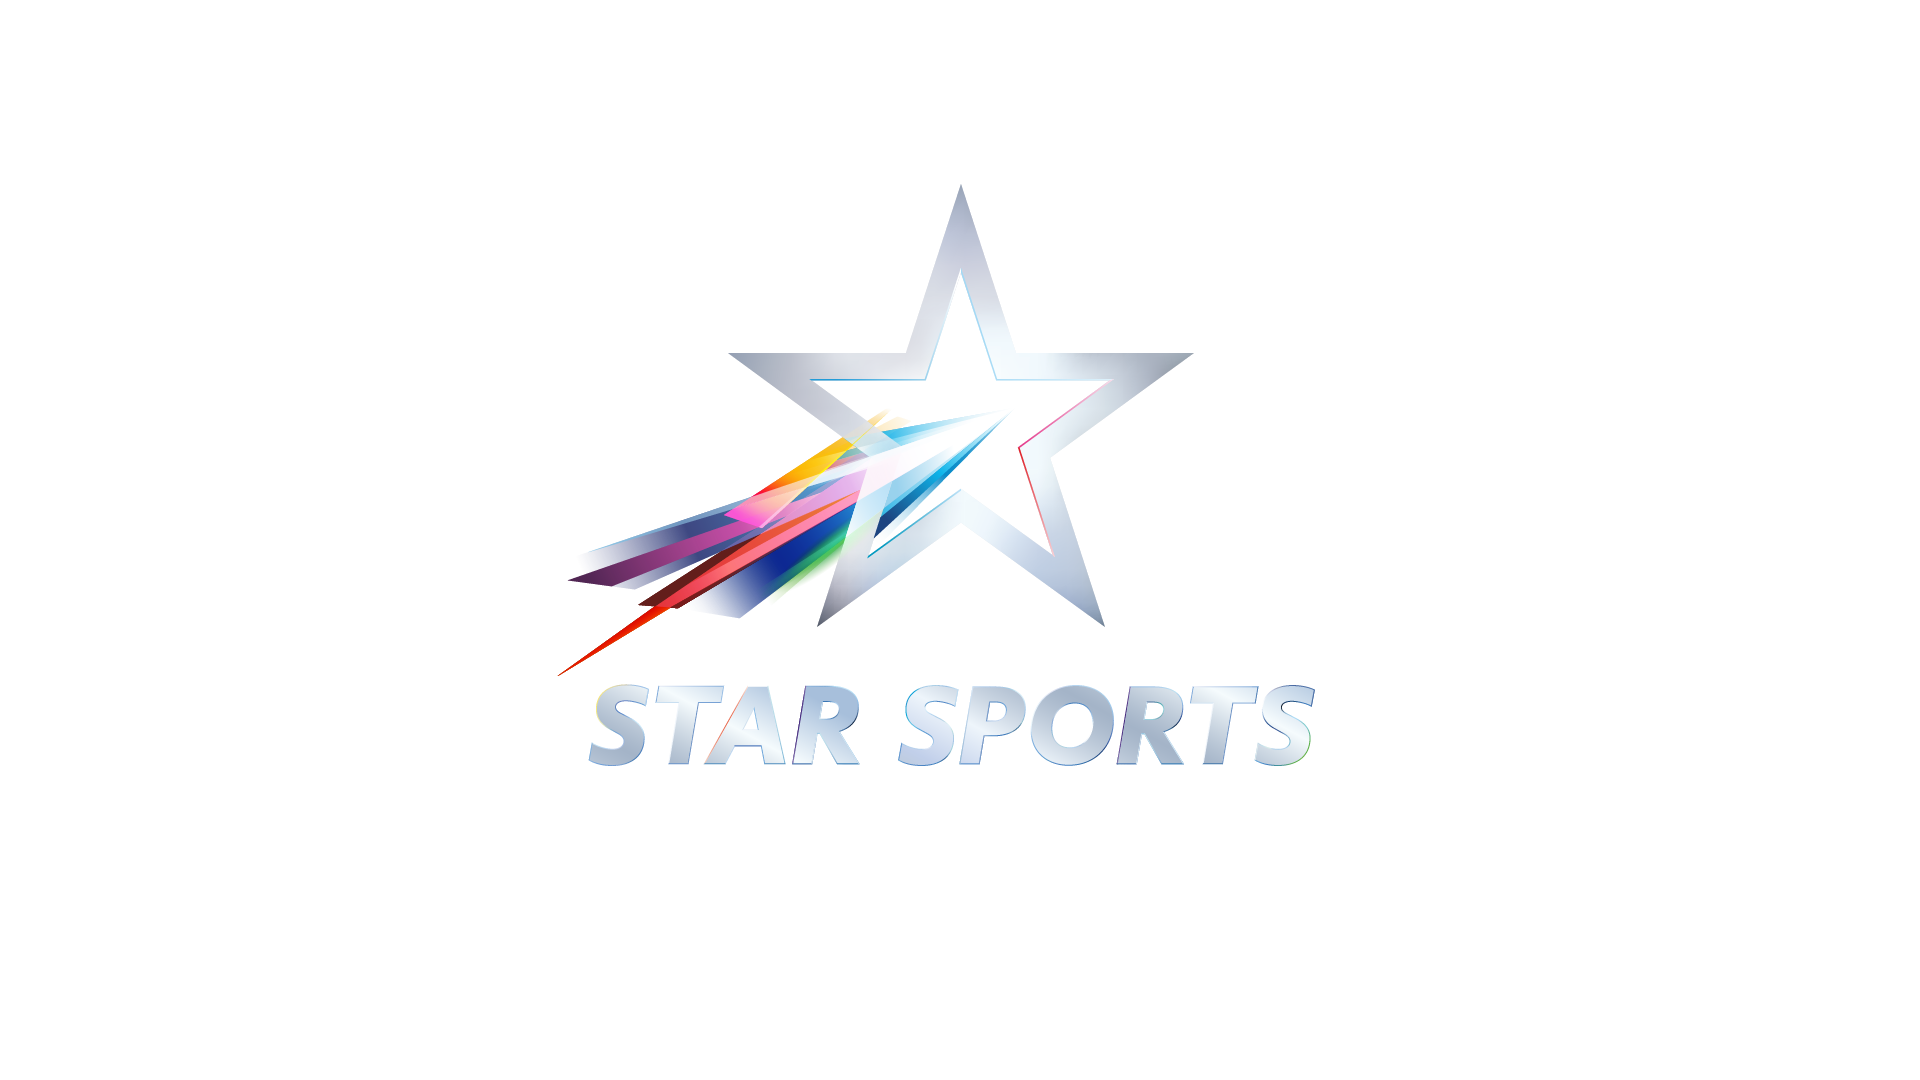 STARS - Sports Logos International Llc Trademark Registration